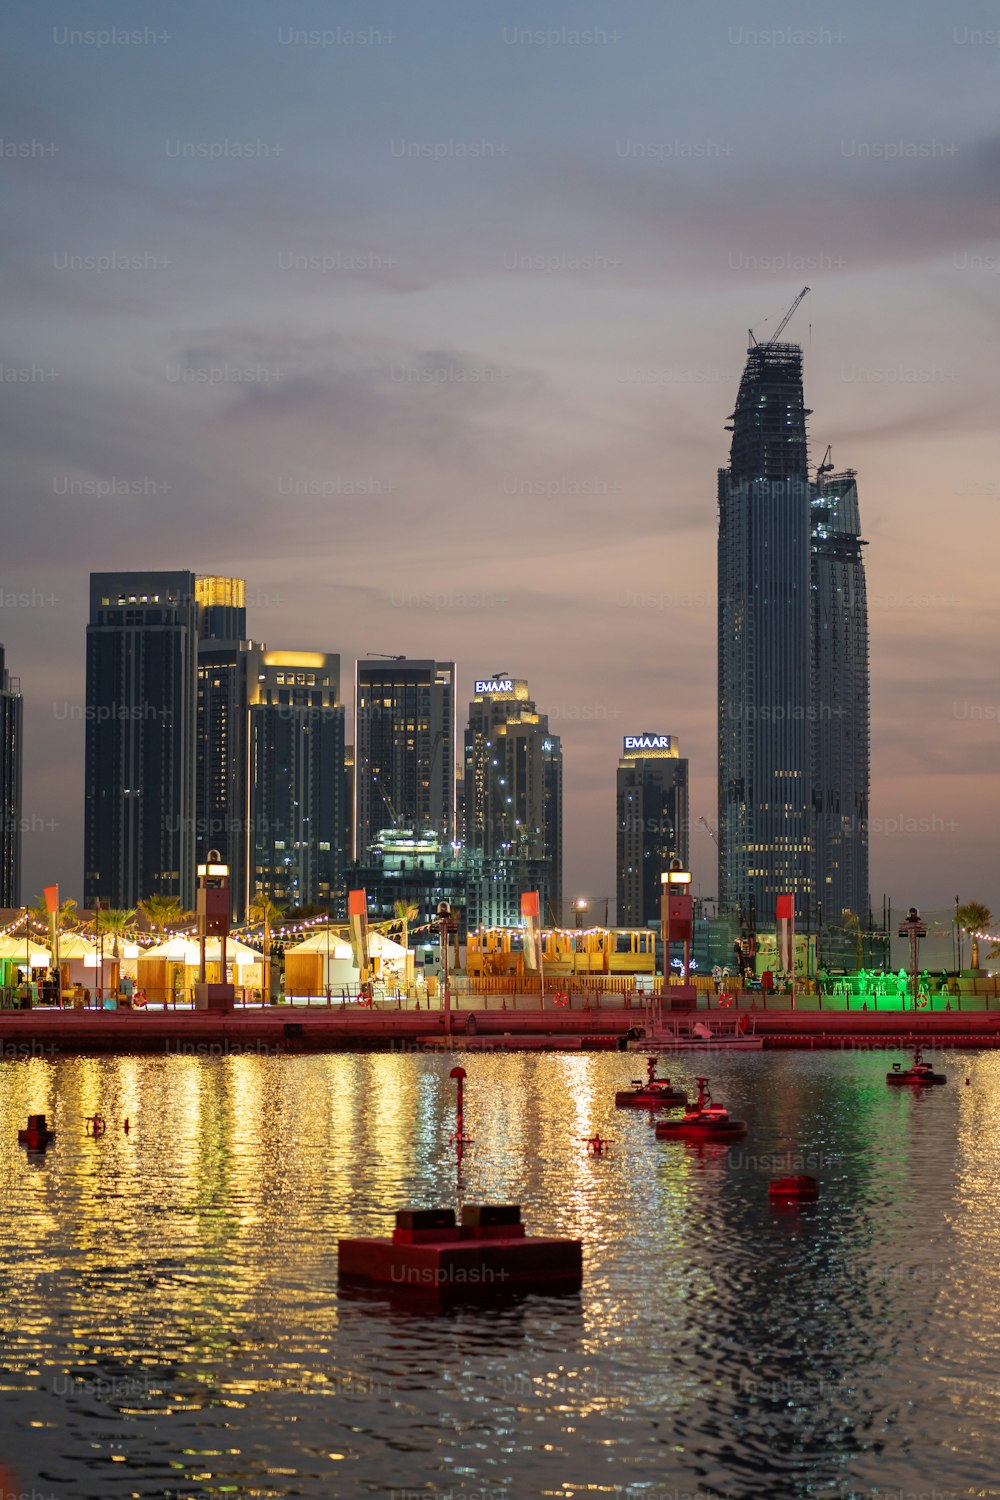 Dubai Festival City Skyline Buildings during suns